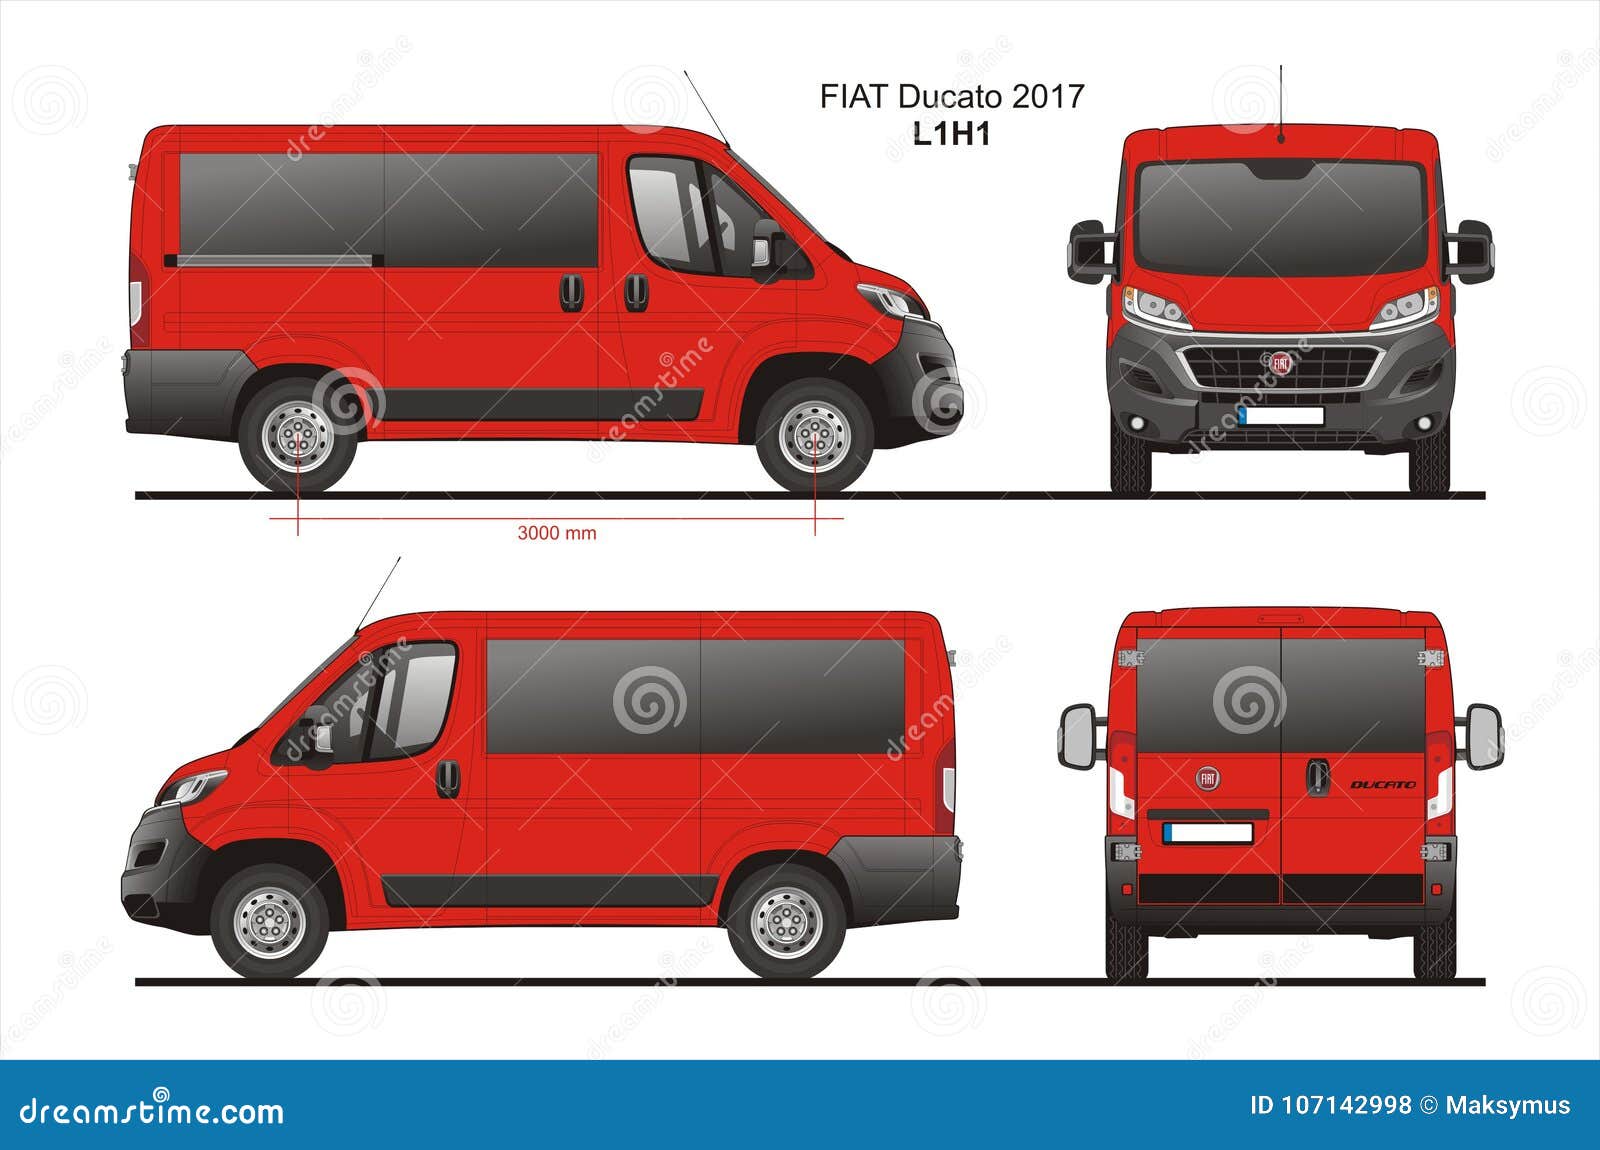 Fiat Ducato Passenger Van 2017 L1H1 Blueprint Editorial